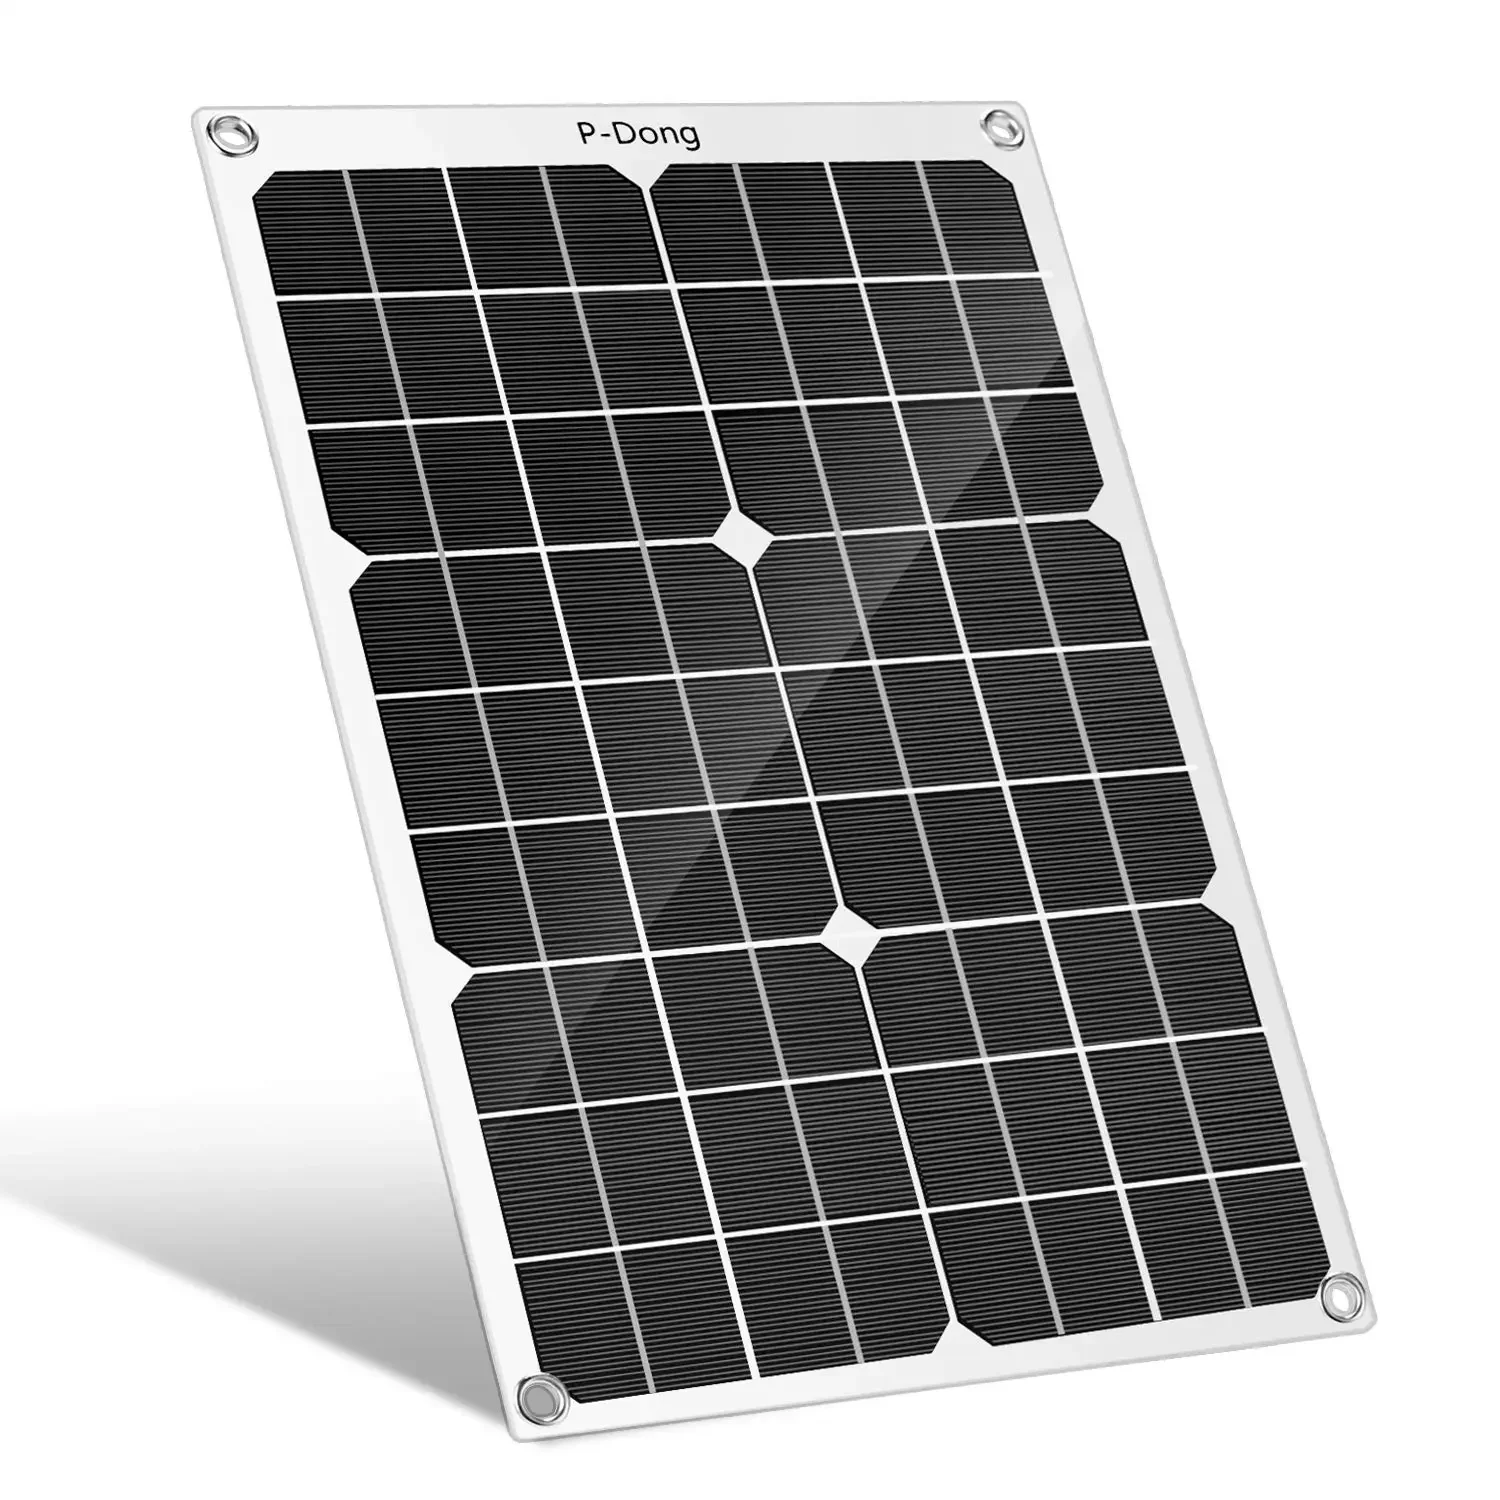 

20 Вт Гибкая солнечная панель 12 В зарядное устройство двойной USB с контроллером 10 А солнечные элементы Power Bank для телефона автомобиля яхты RV